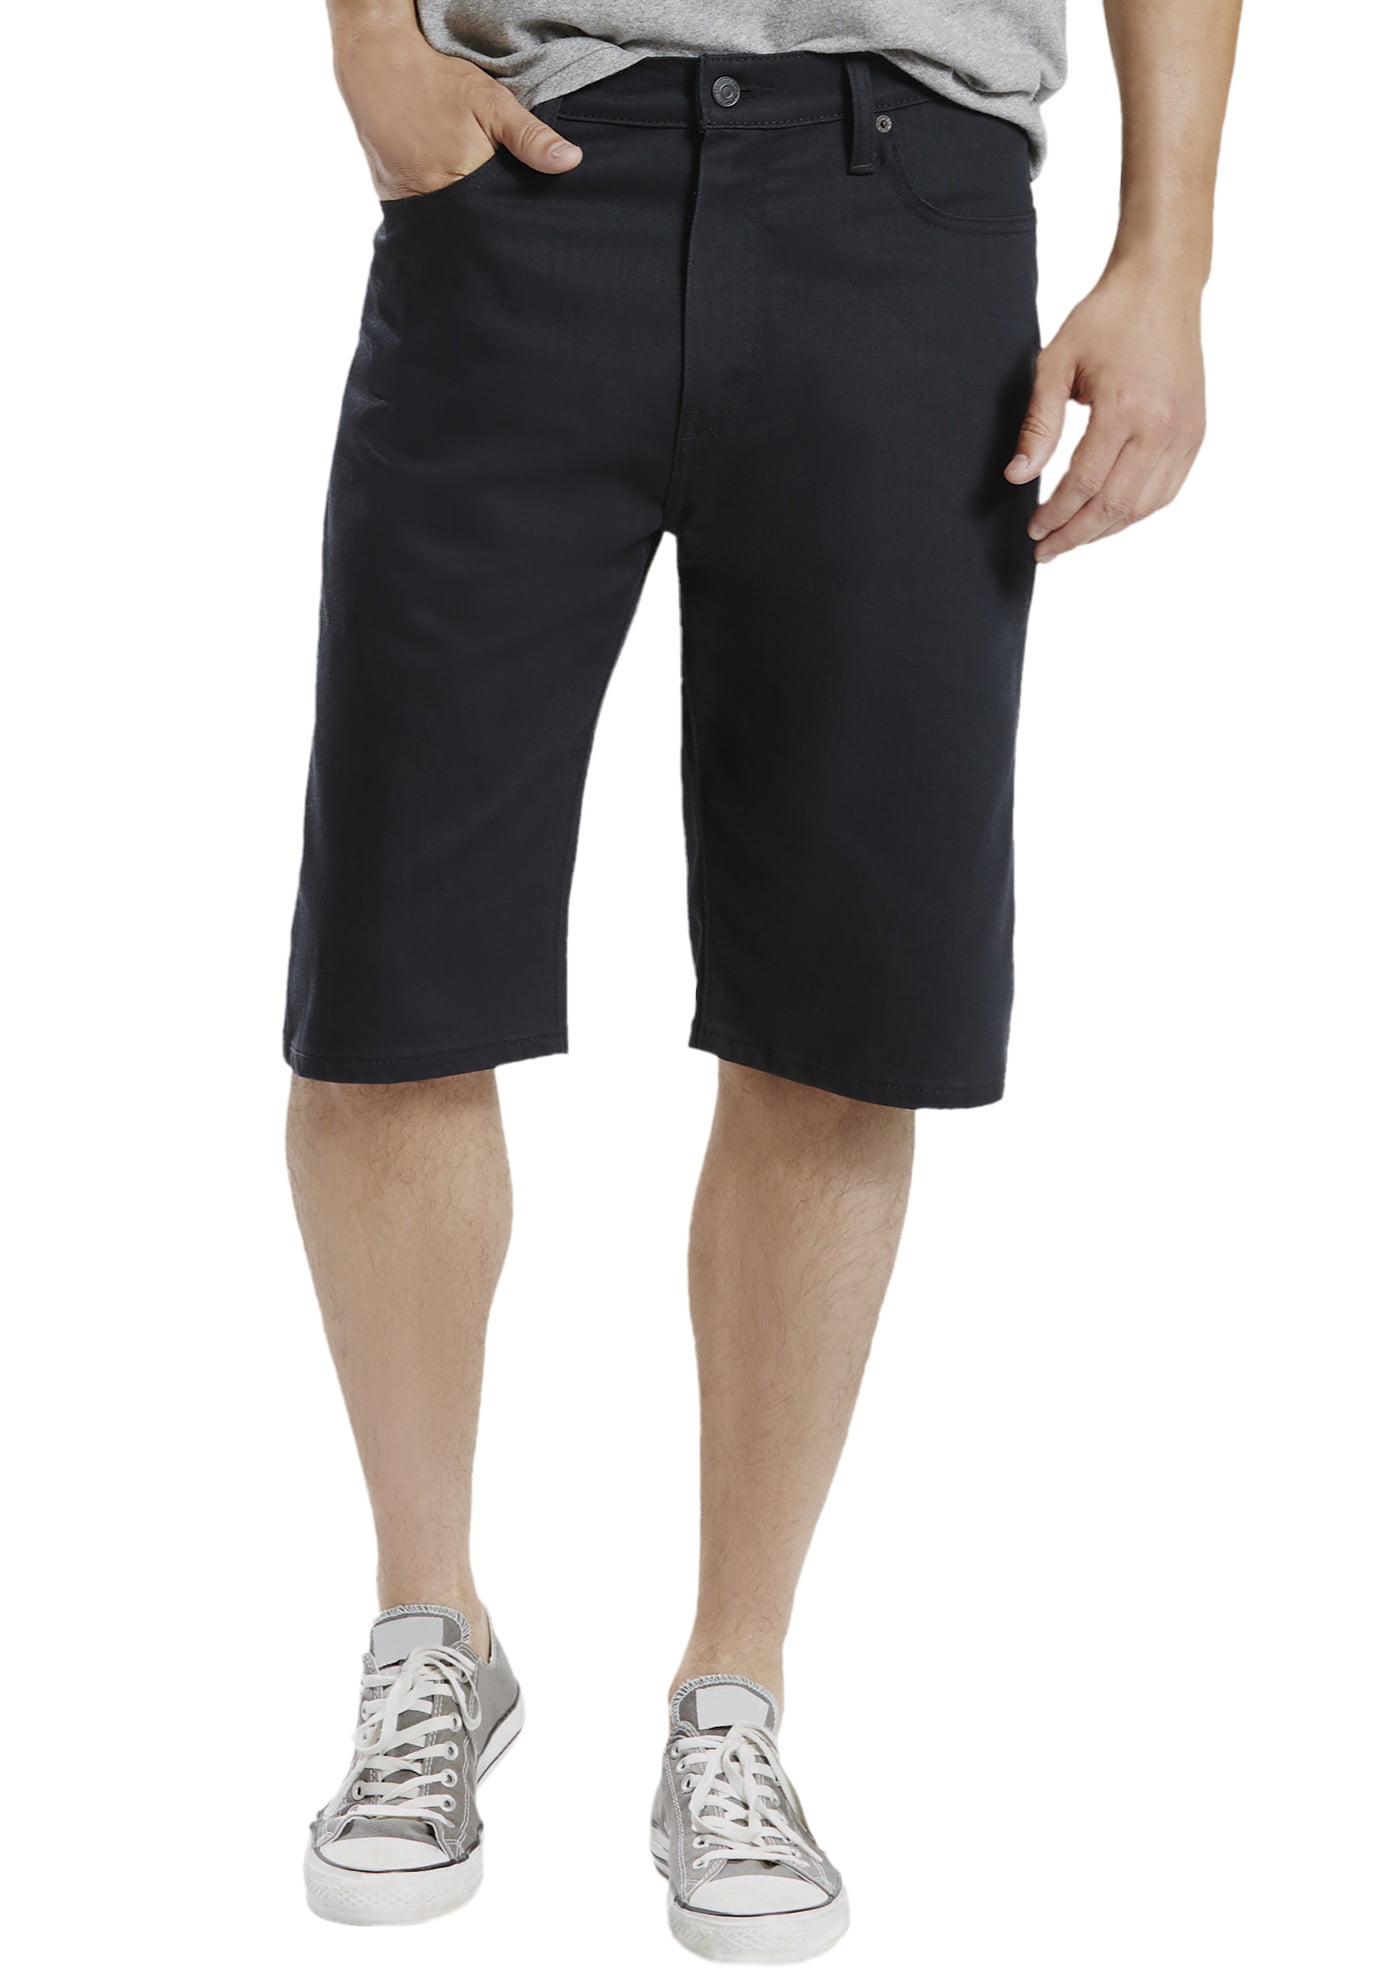 Levi's® 469 Loose Fit 12 Inseam Denim Shorts